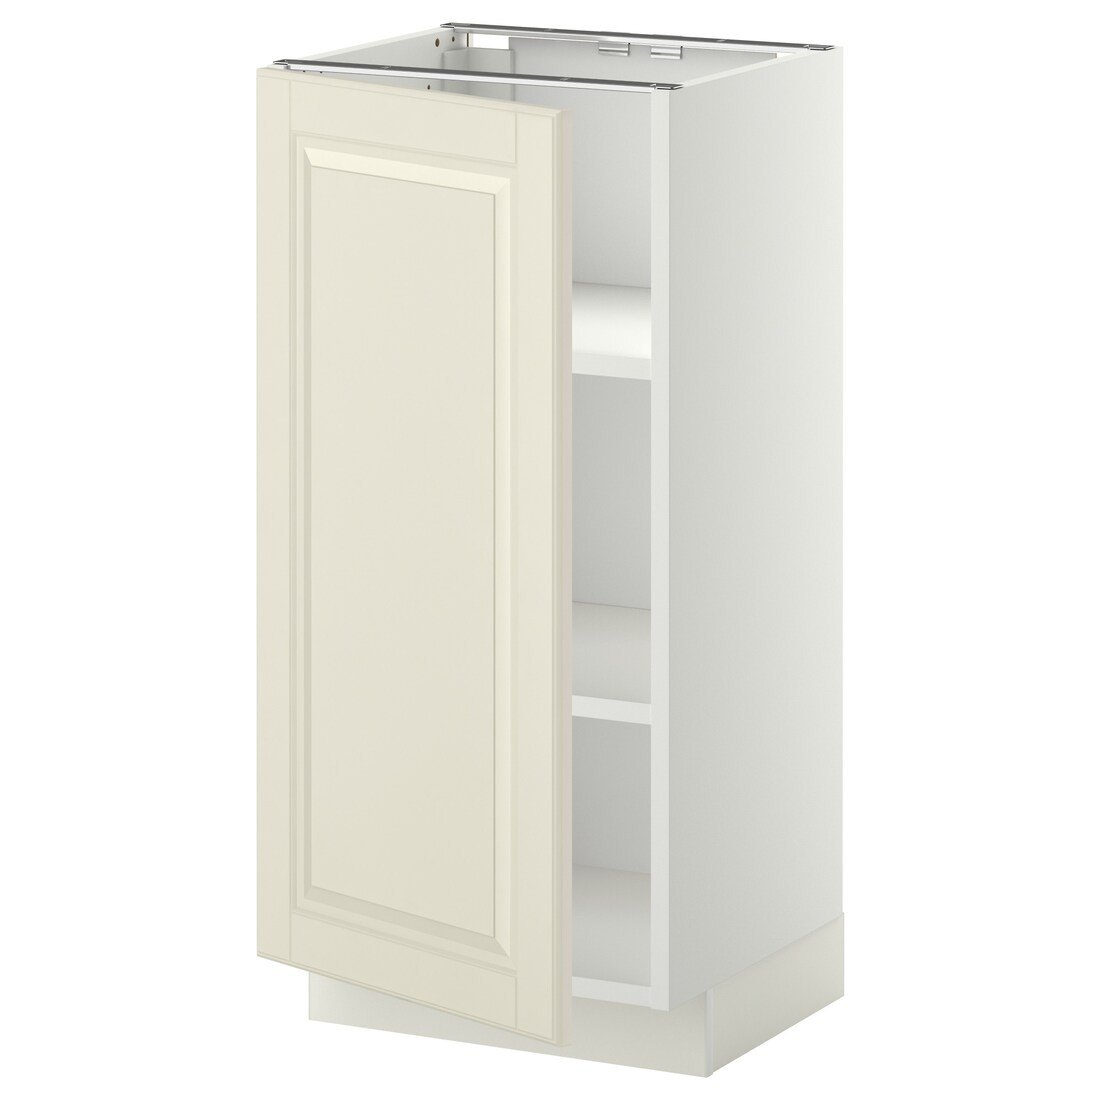 IKEA METOD МЕТОД Напольный шкаф с полками, белый / Bodbyn кремовый, 40x37 см 59463550 | 594.635.50